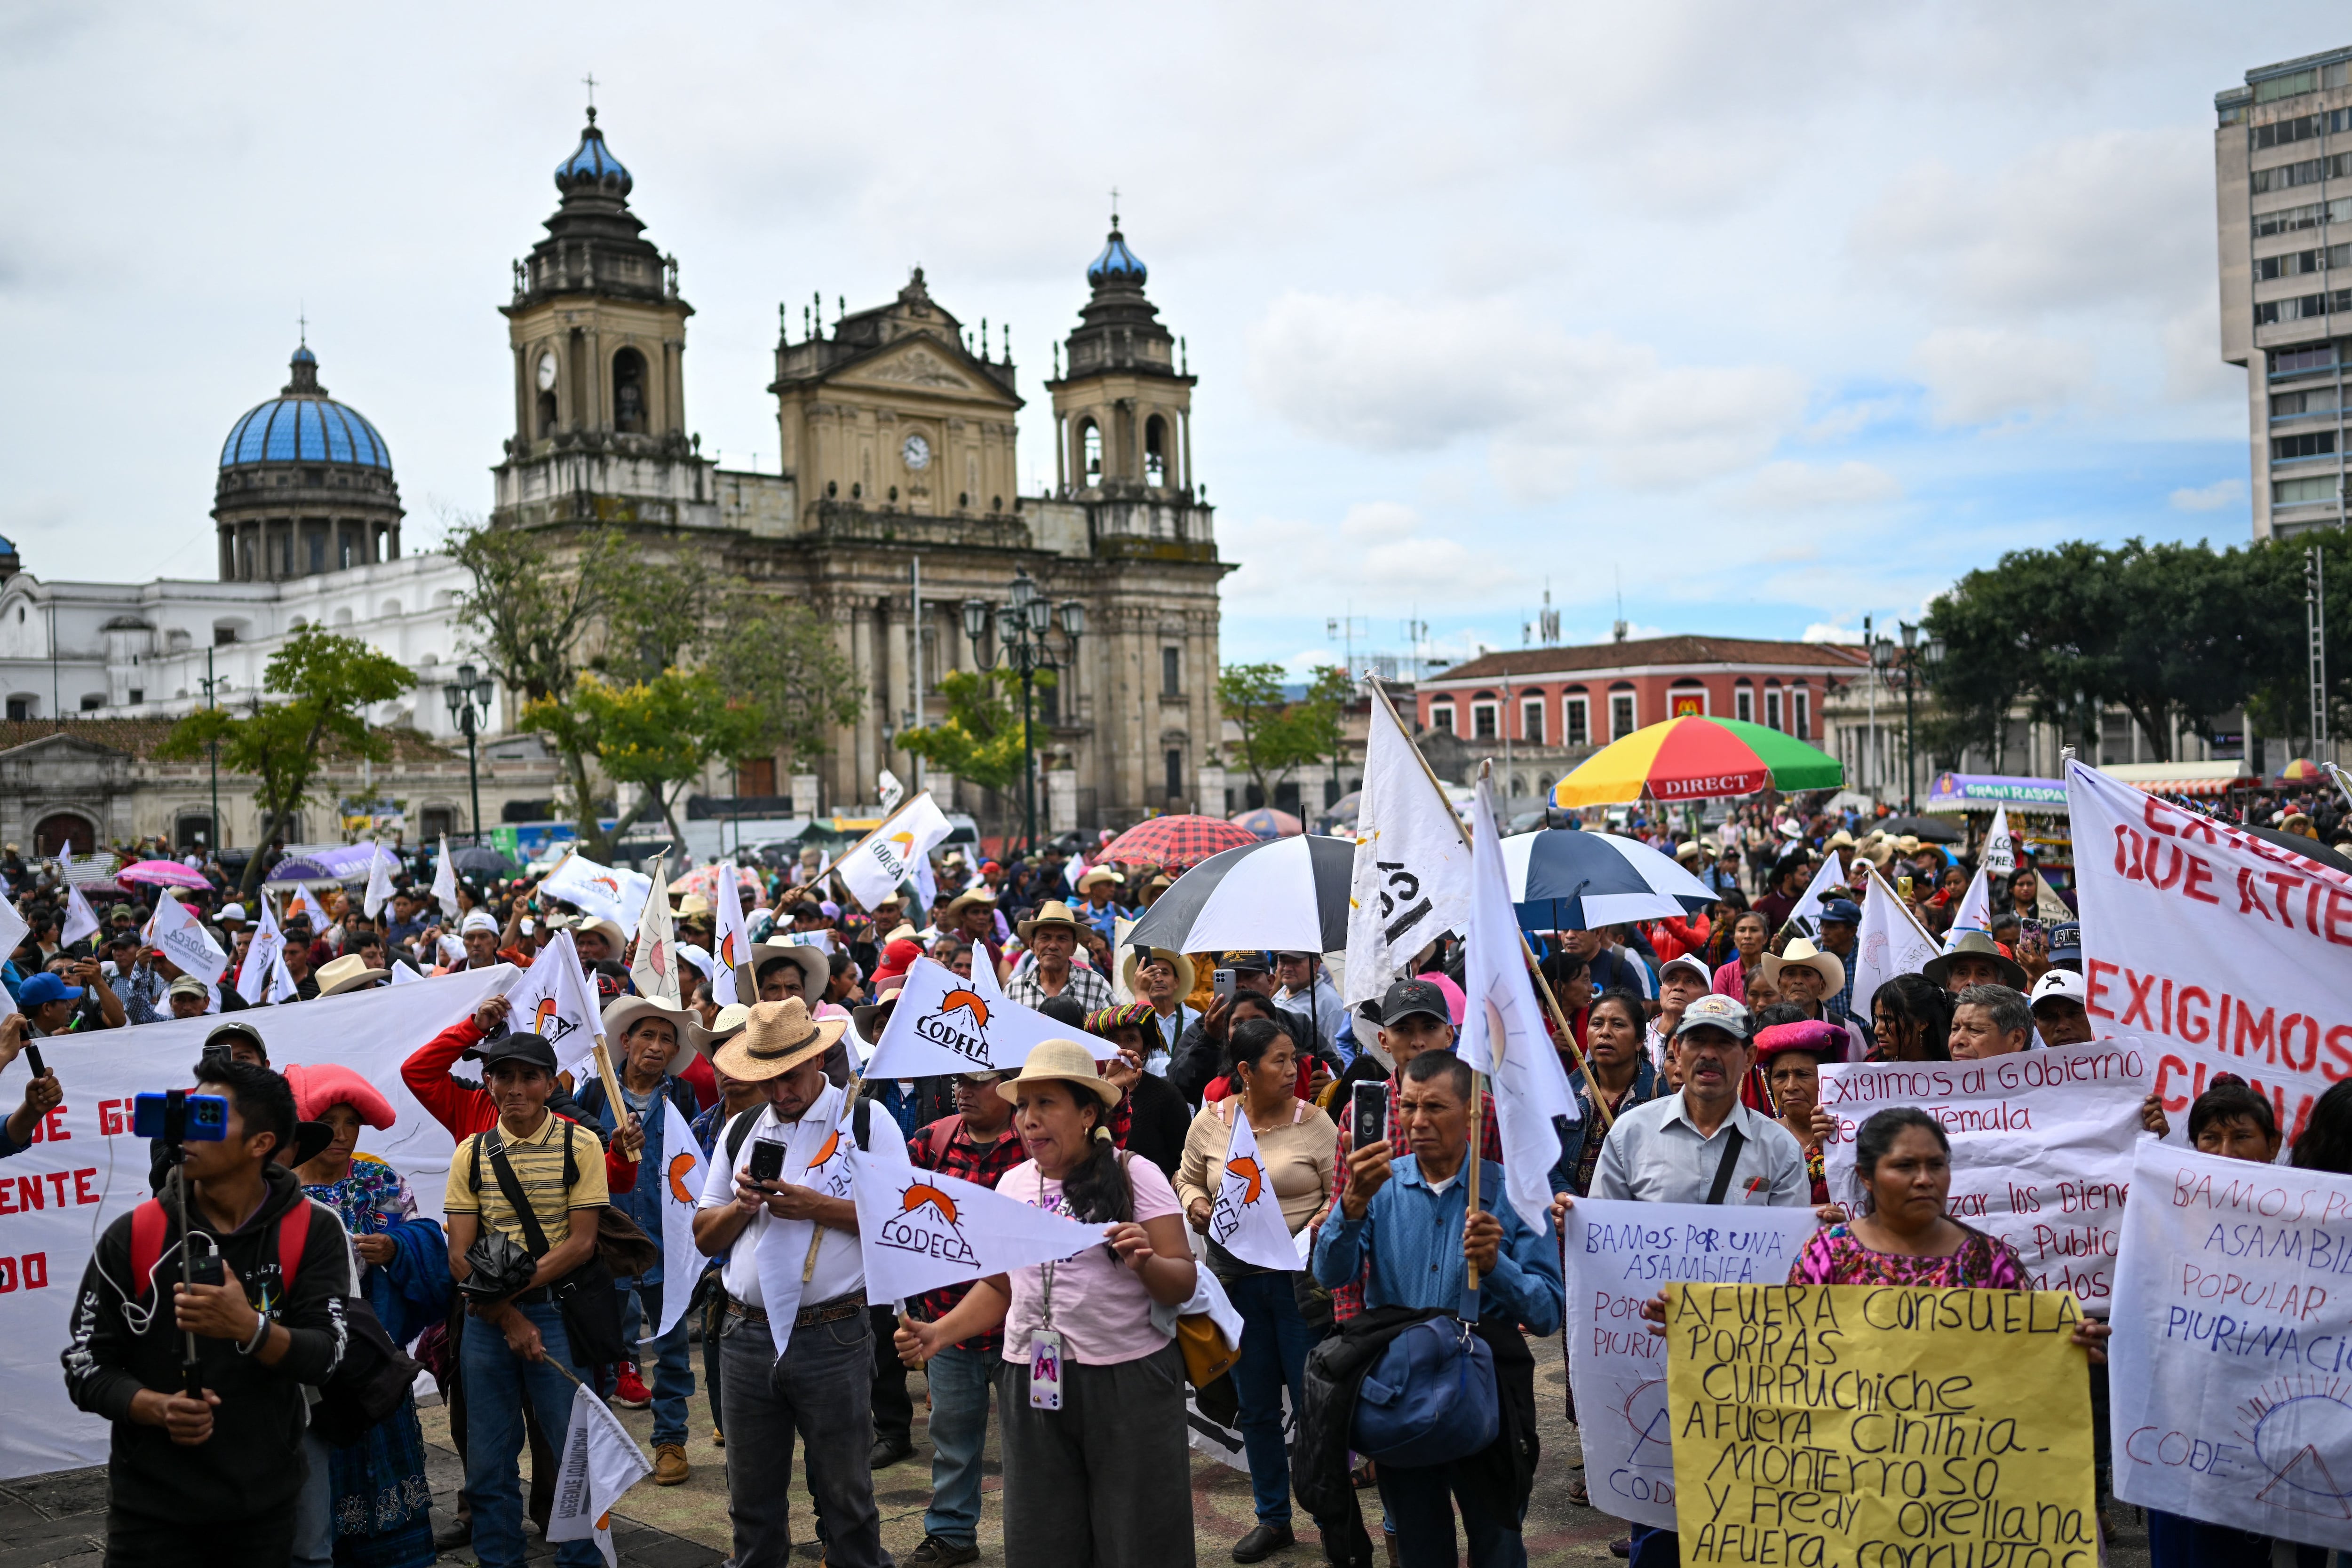 Los manifestantes pidieron la reducción de los costos de los productos de la canasta básica y la nacionalización de la energía eléctrica, que actualmente está en manos de empresas privadas en Guatemala.